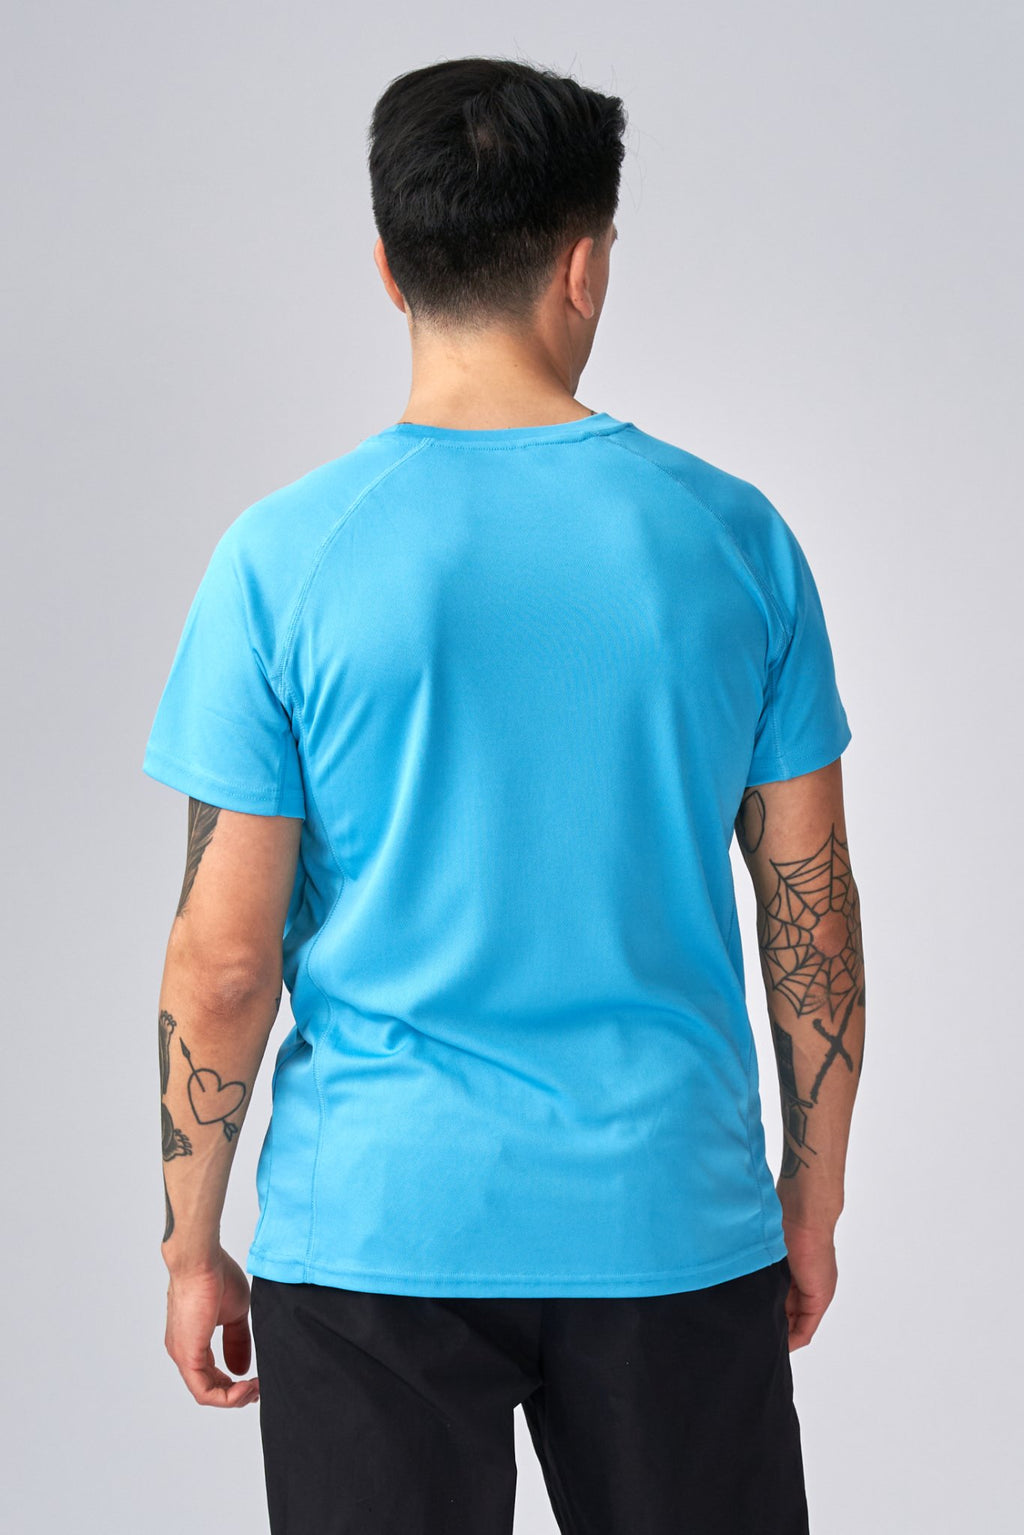 T -shirt di addestramento - blu turchese